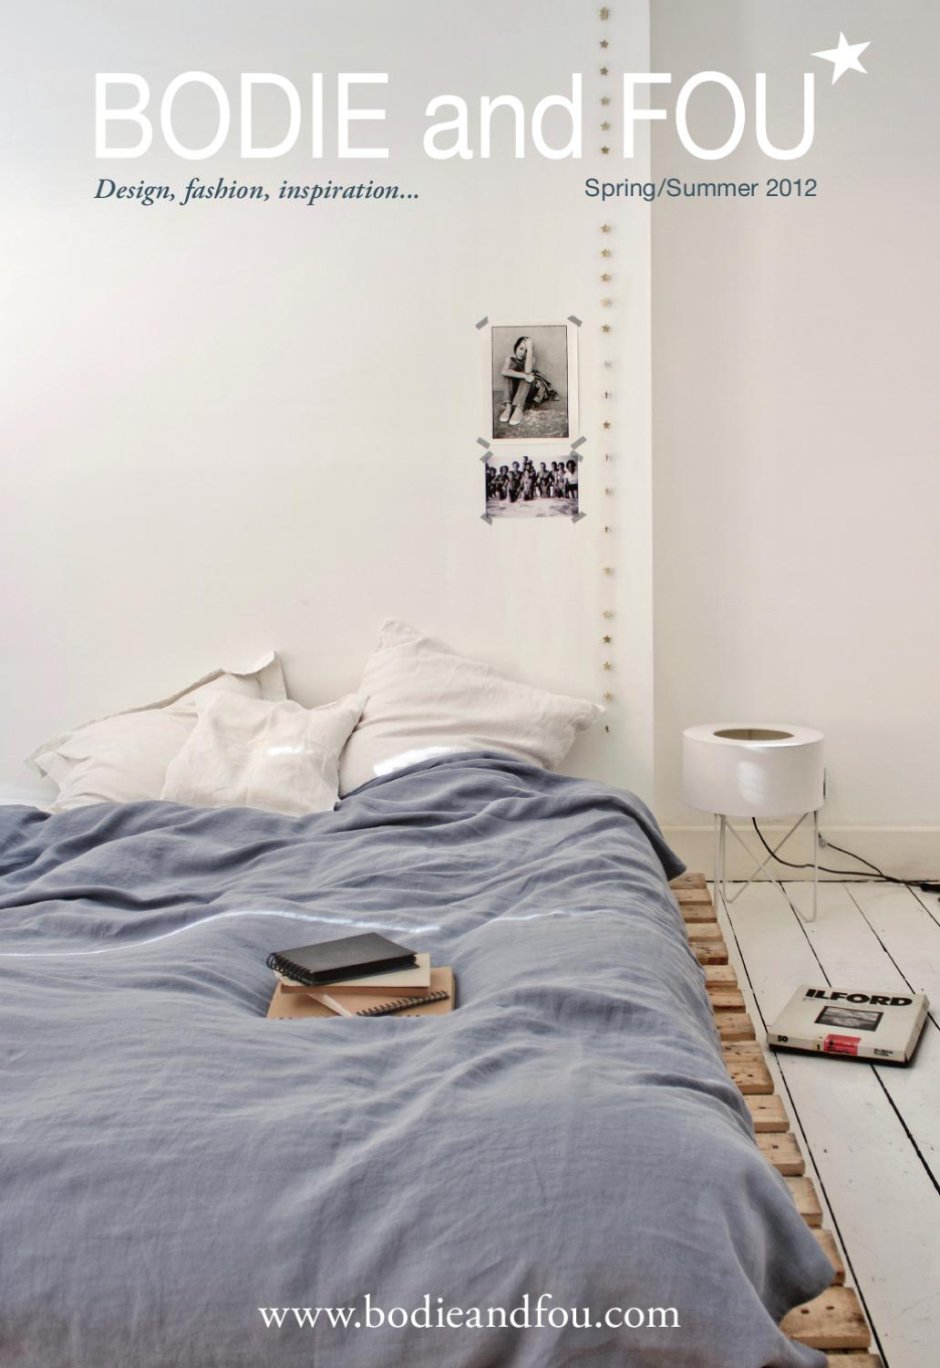 Спальня без кровати с матрасом